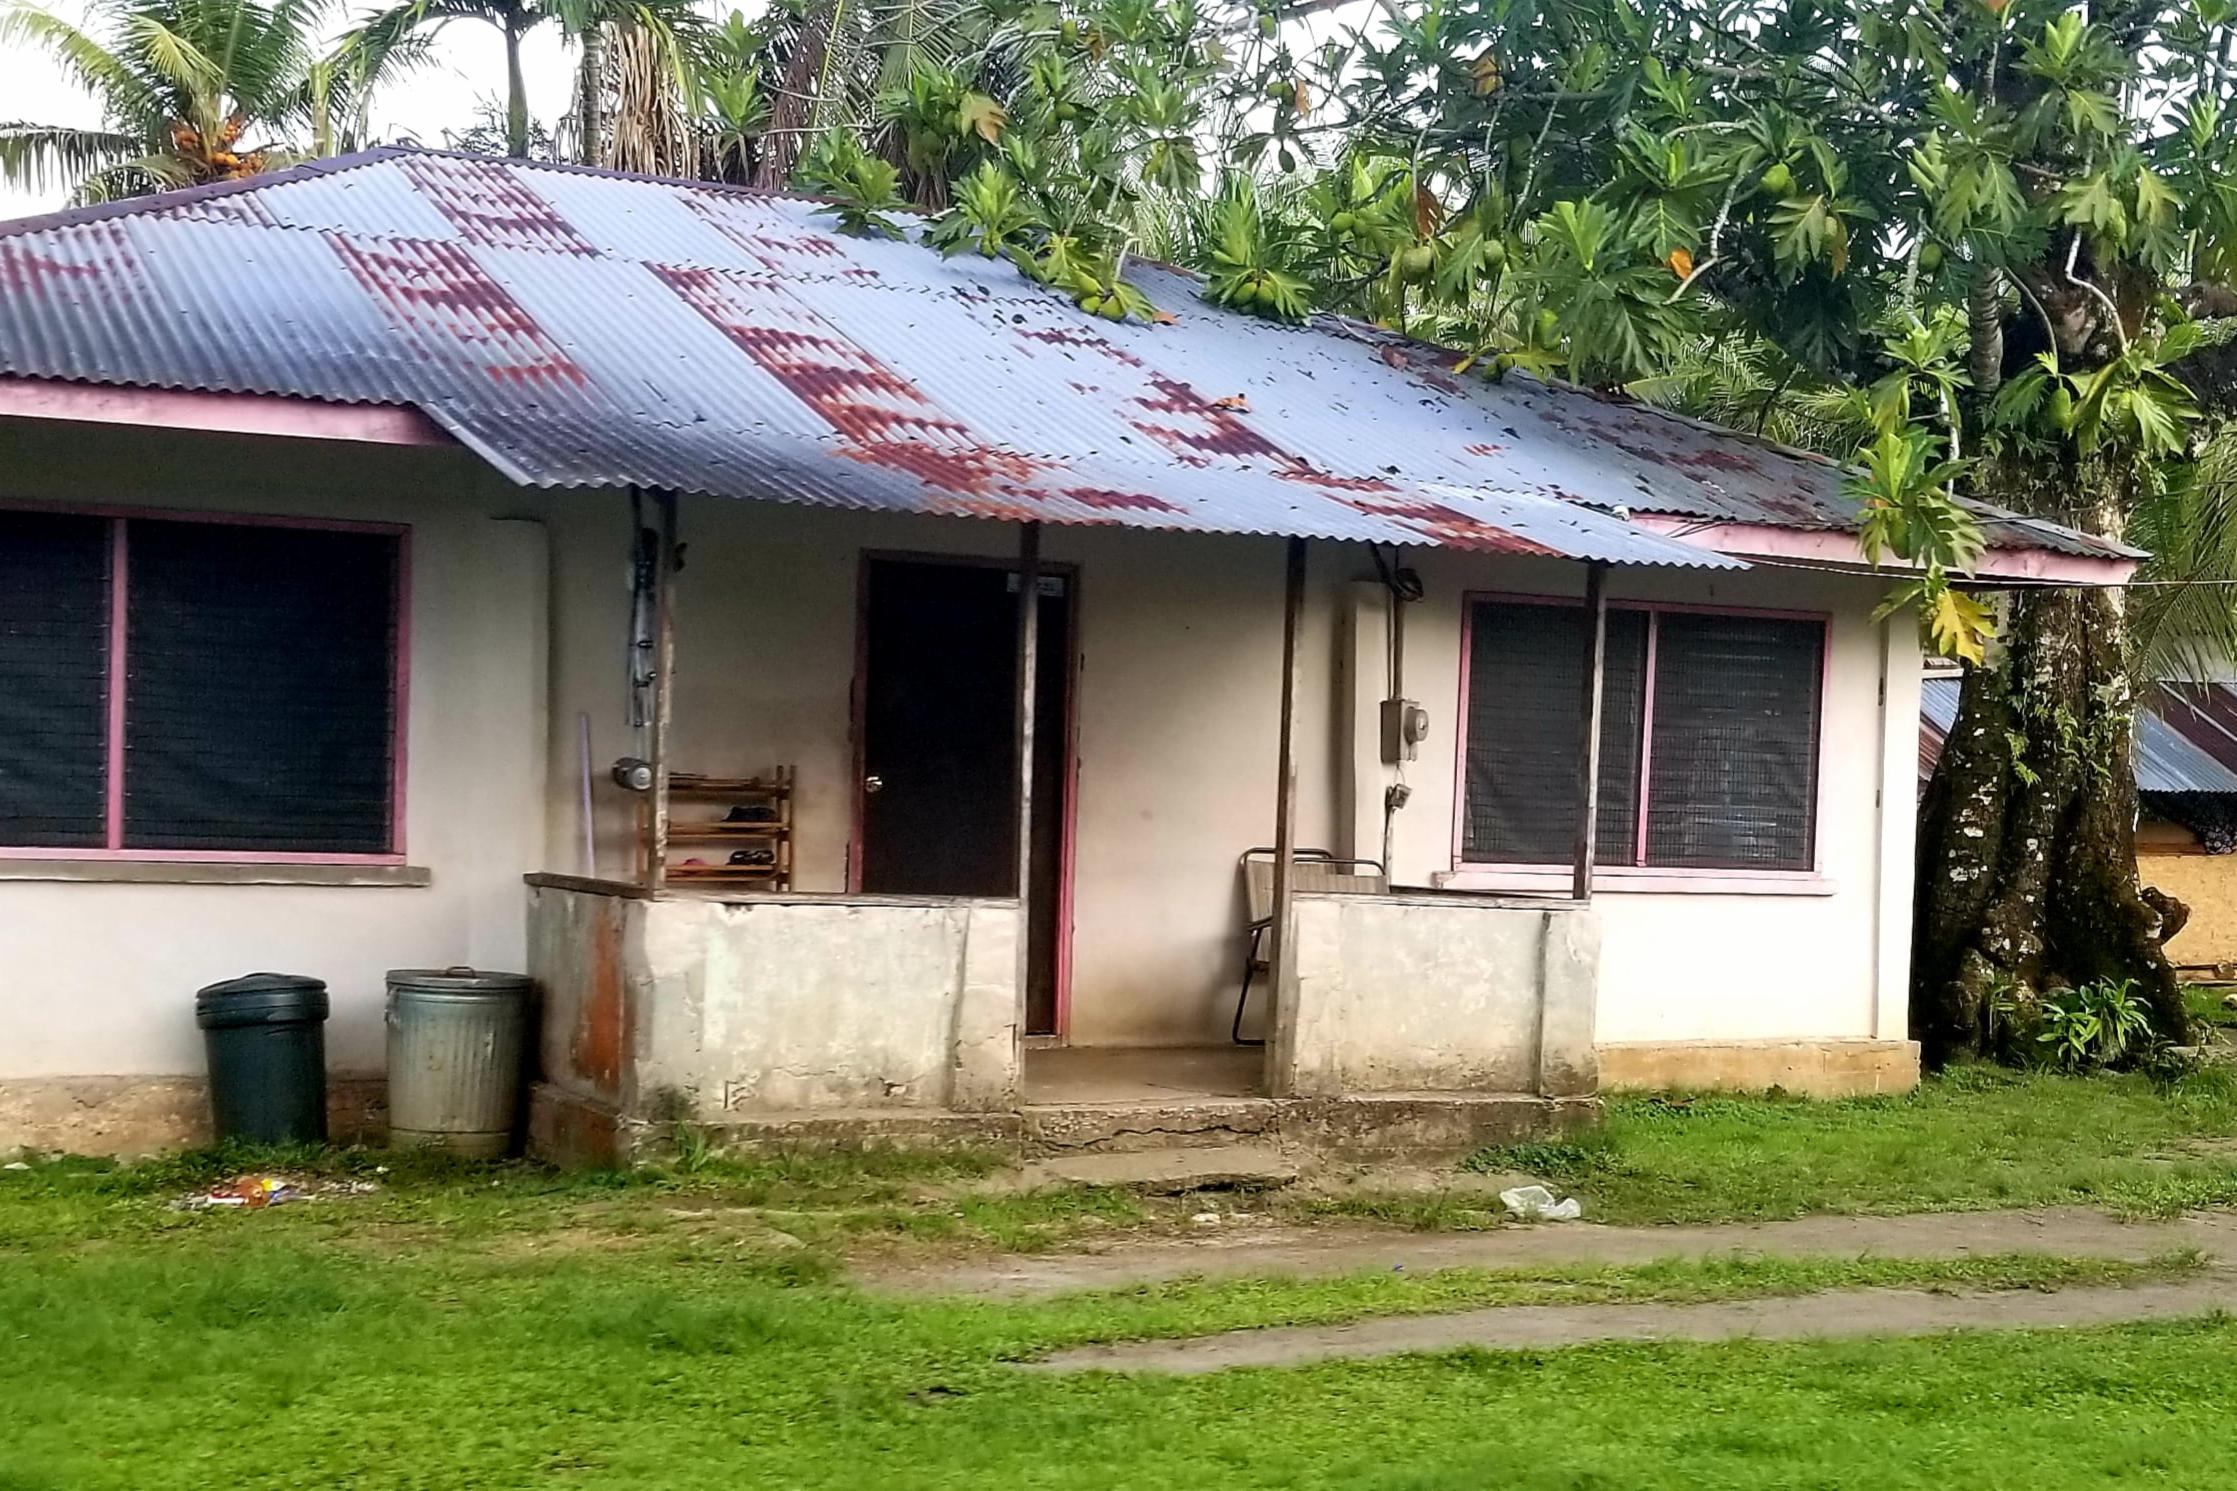 A family dwelling on Kosrae